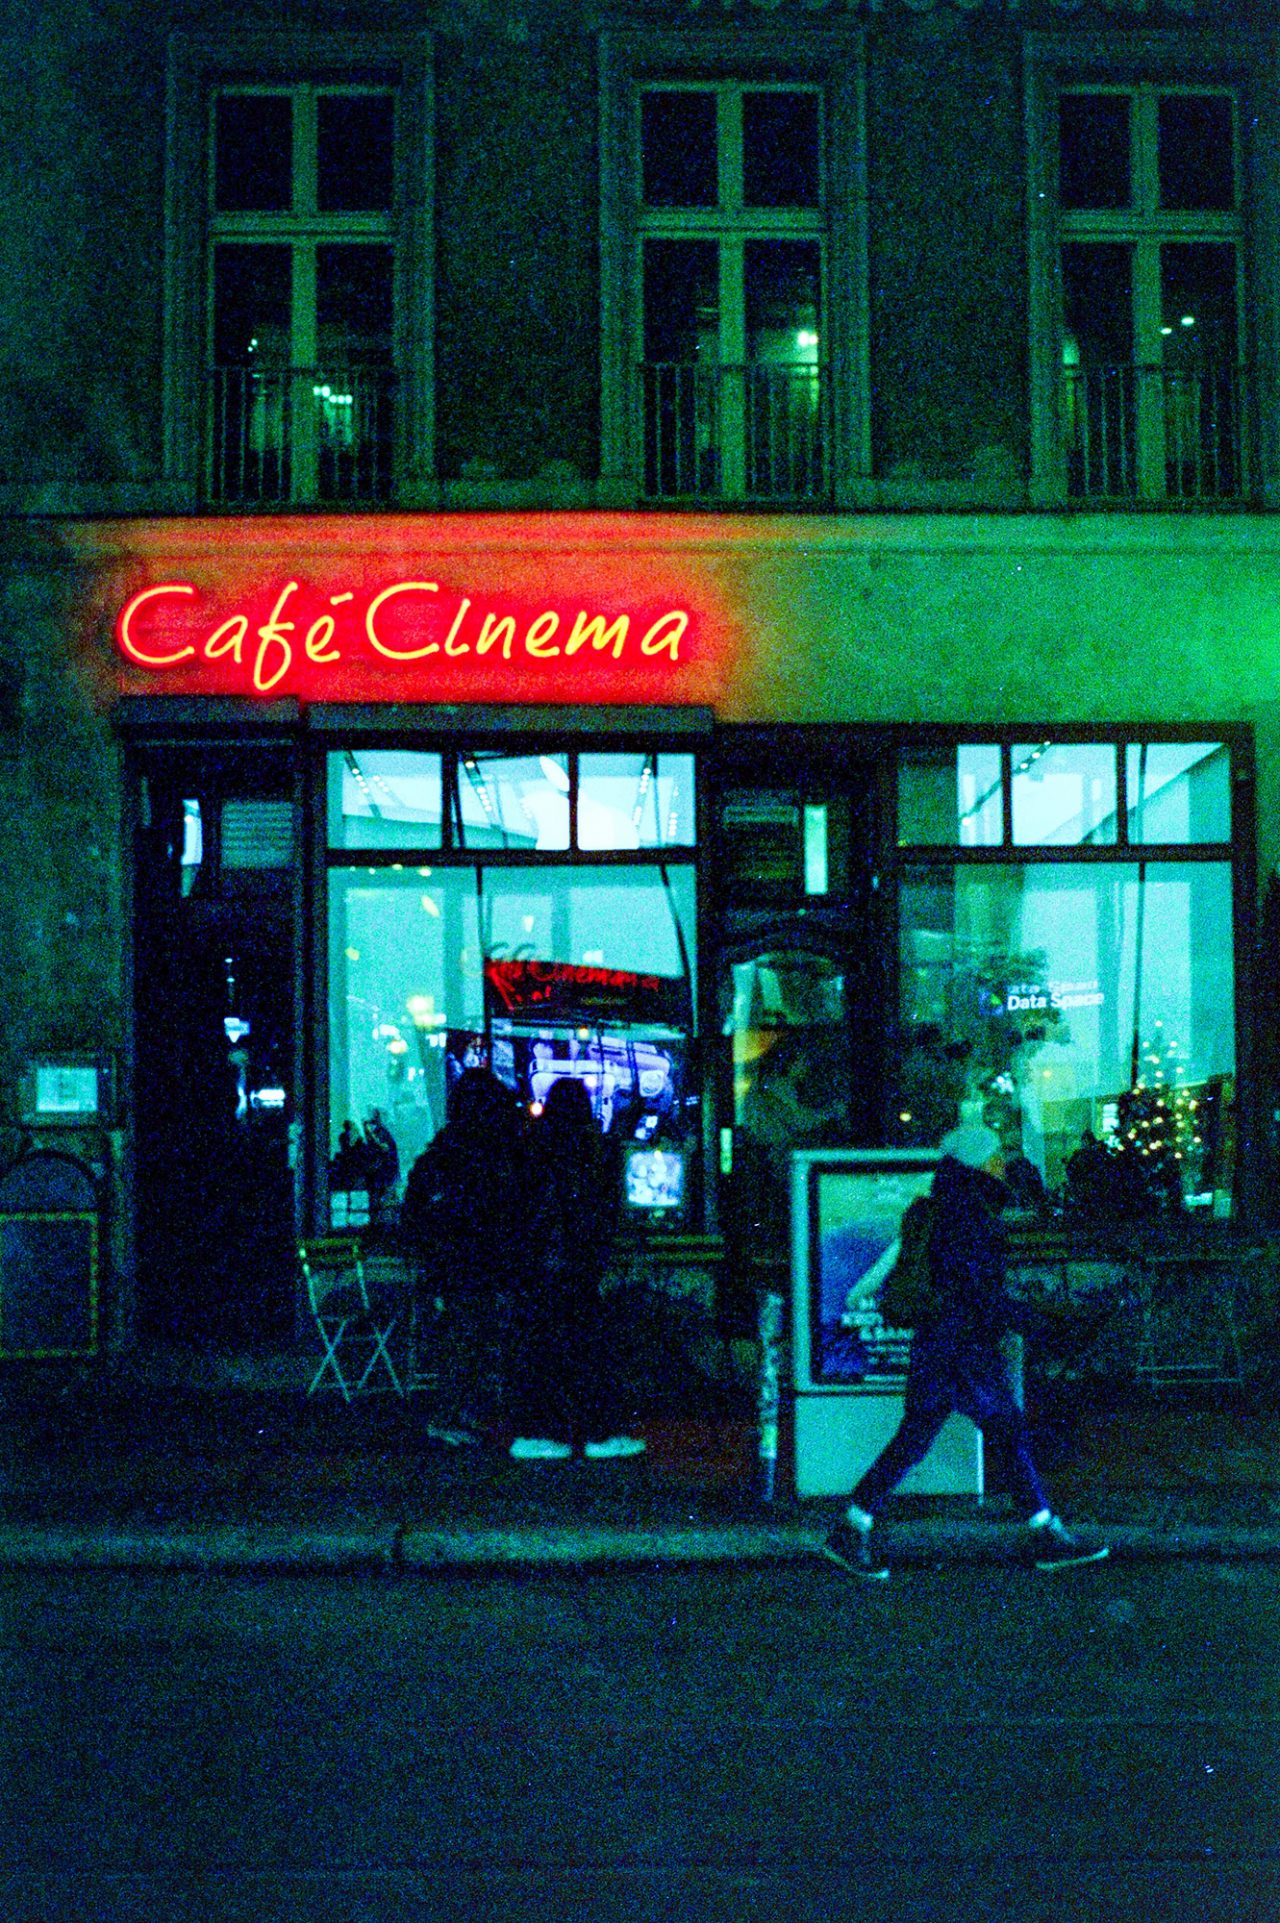 Café Cinema, Rosenthaler Platz, Berlin